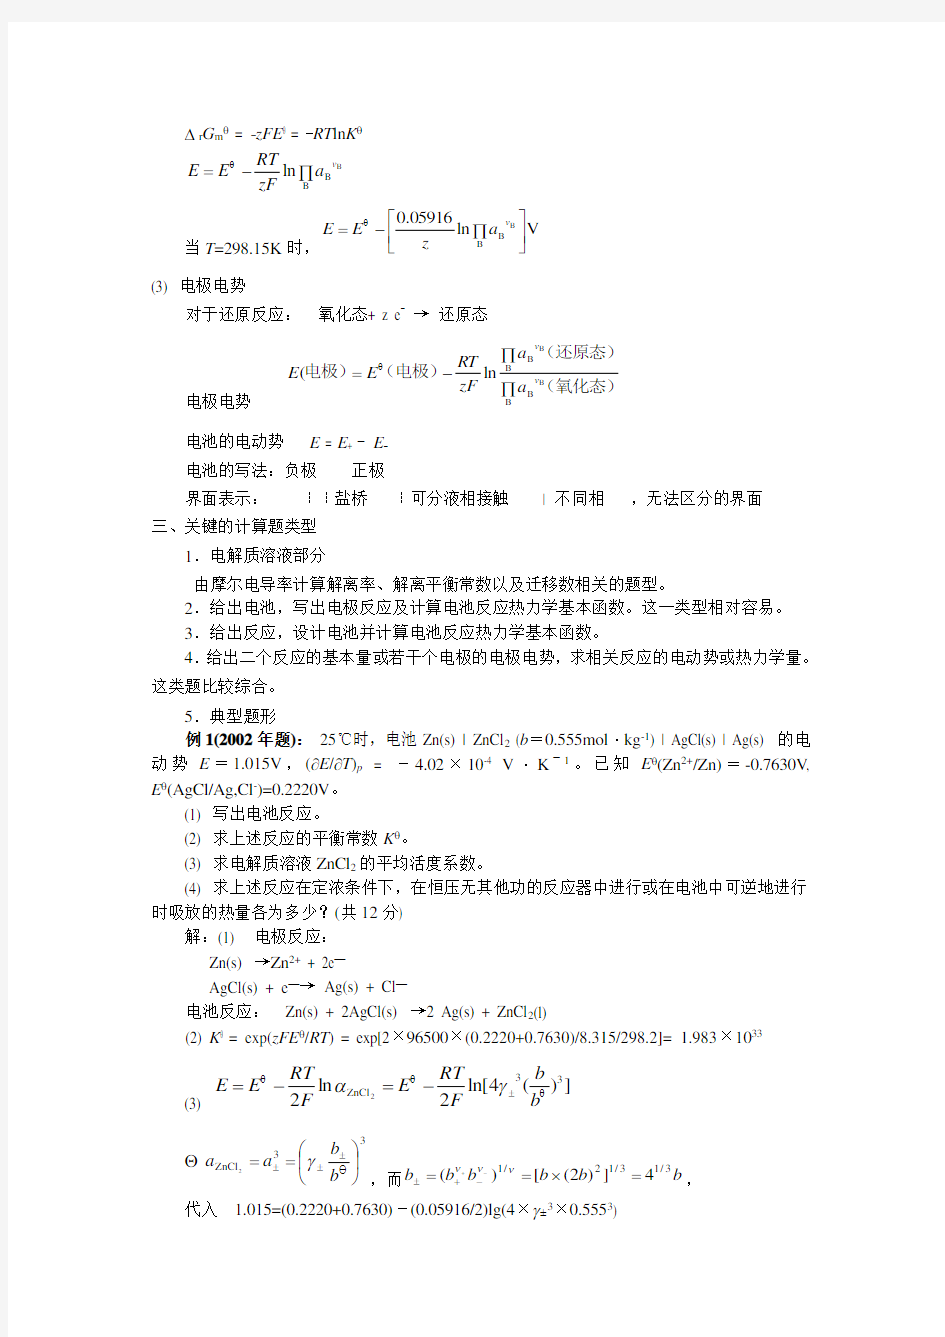 华南理工大学 本科物理化学复习笔记(2)